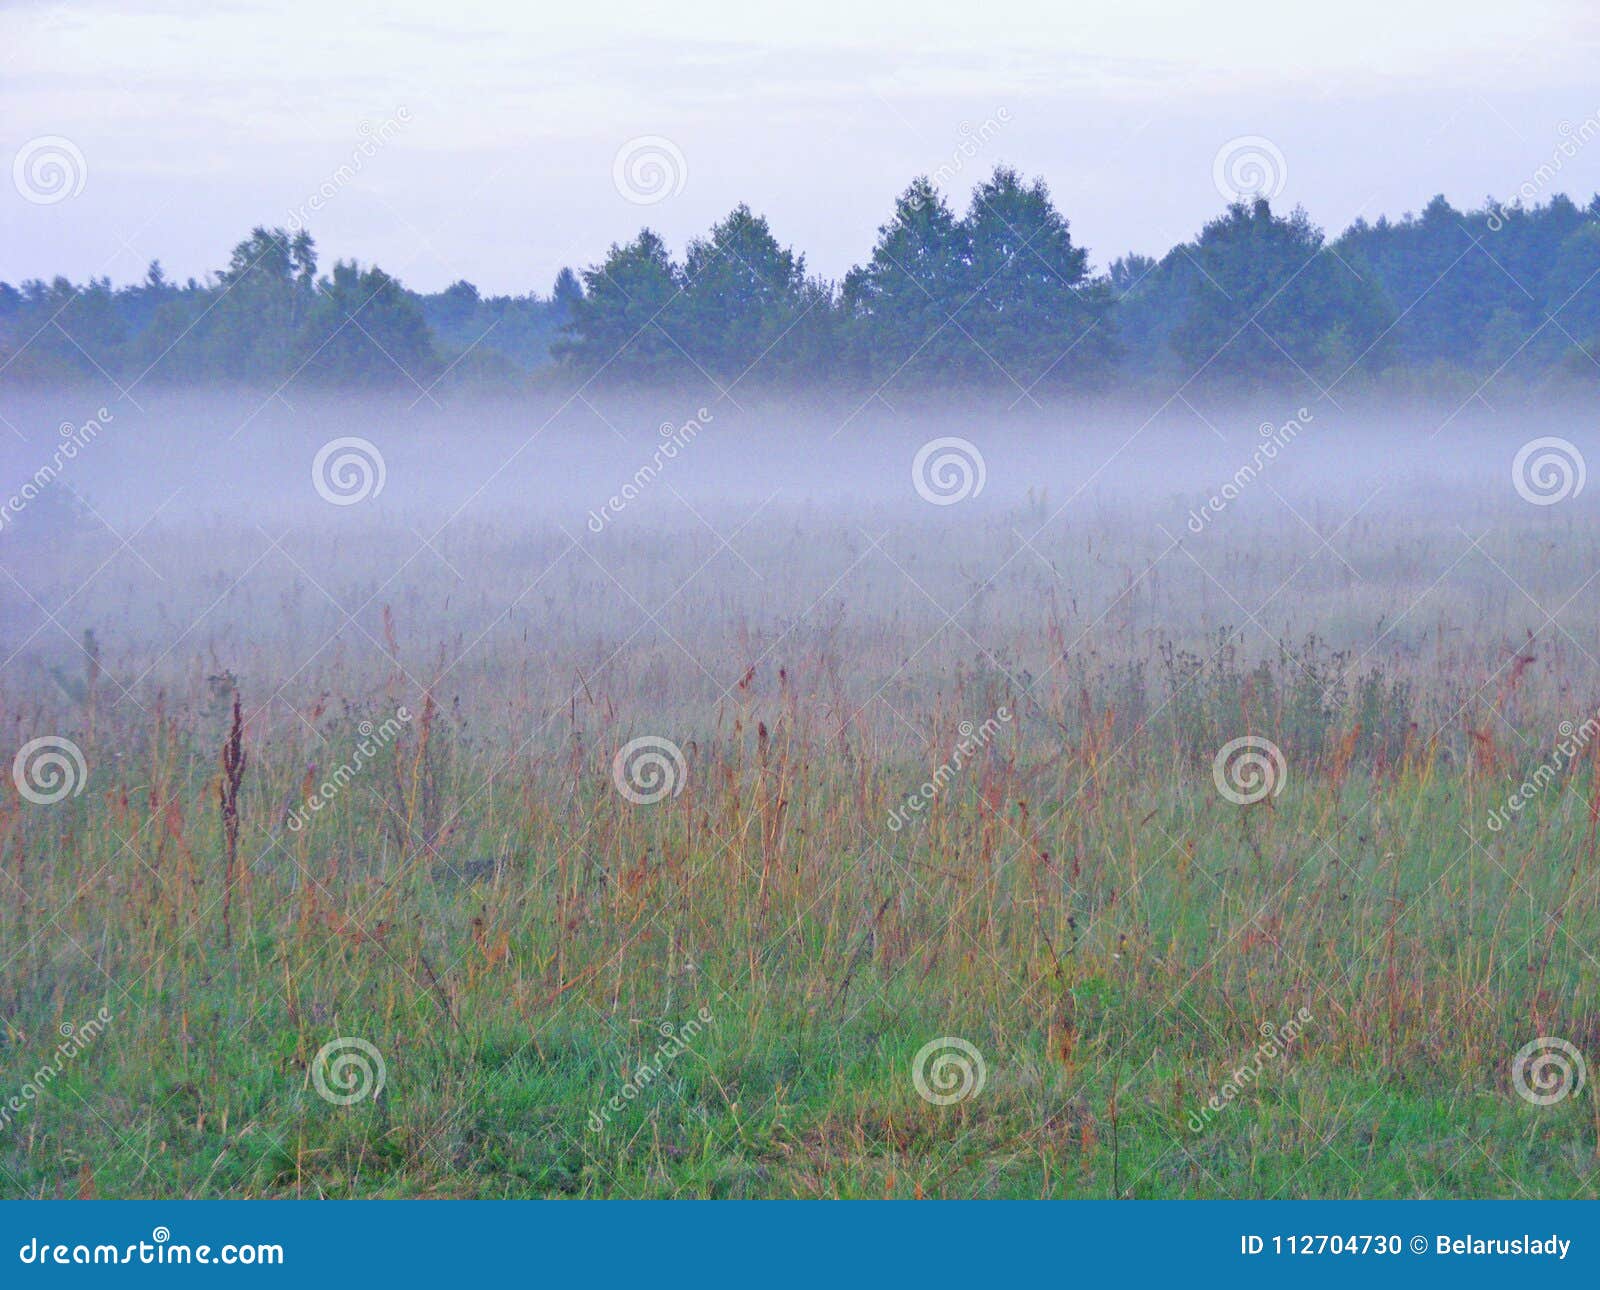 misty morning / fog on meadow